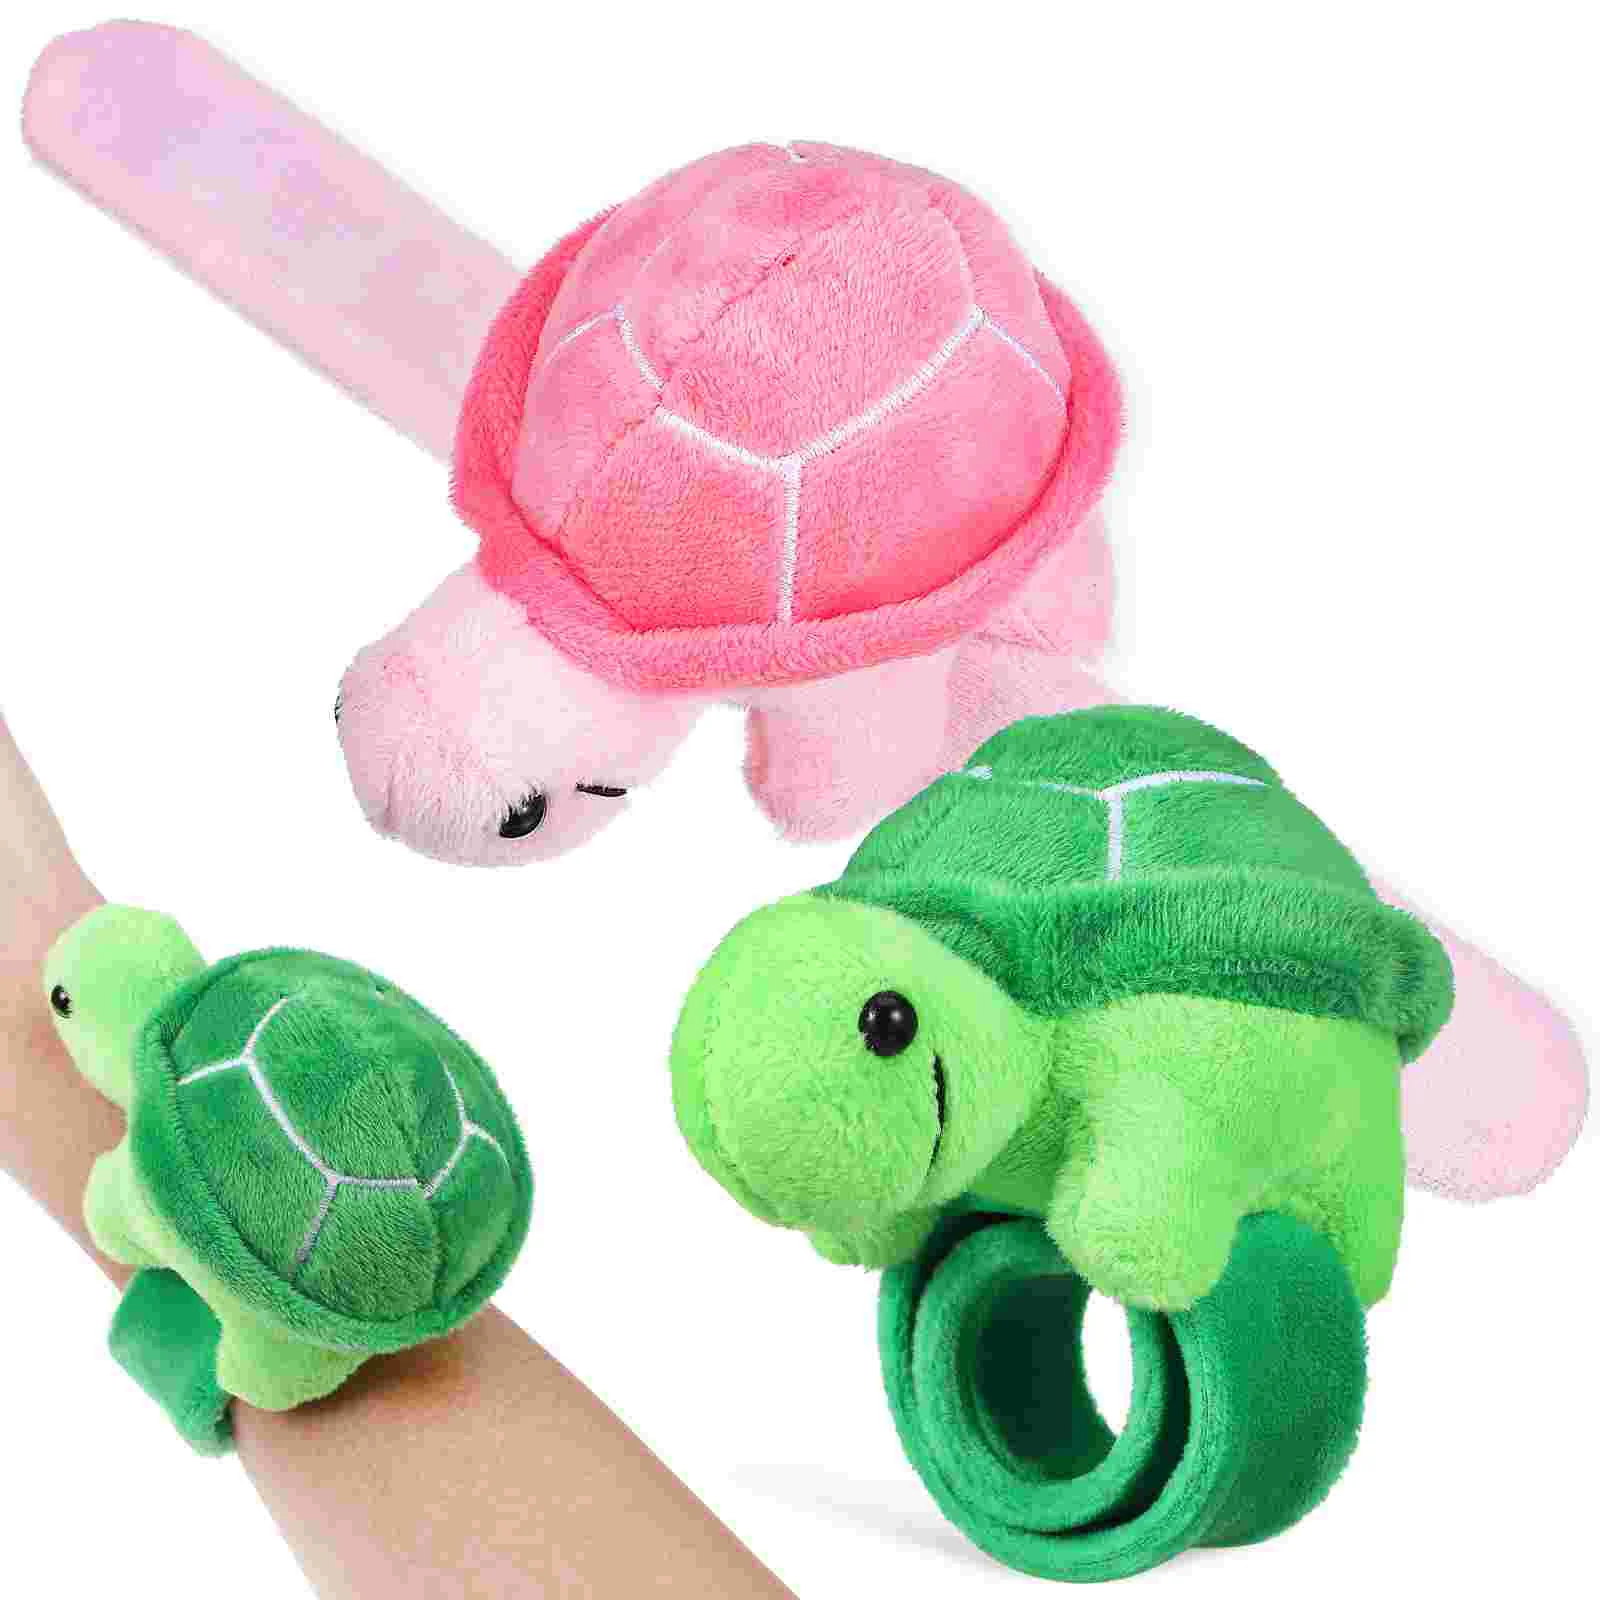 

2 Pcs Stuffed Favors Slap Bands Cartoon Wrist Bracelet For Turtle Bracelets Pp Cotton Snap Child Carnival Prizes